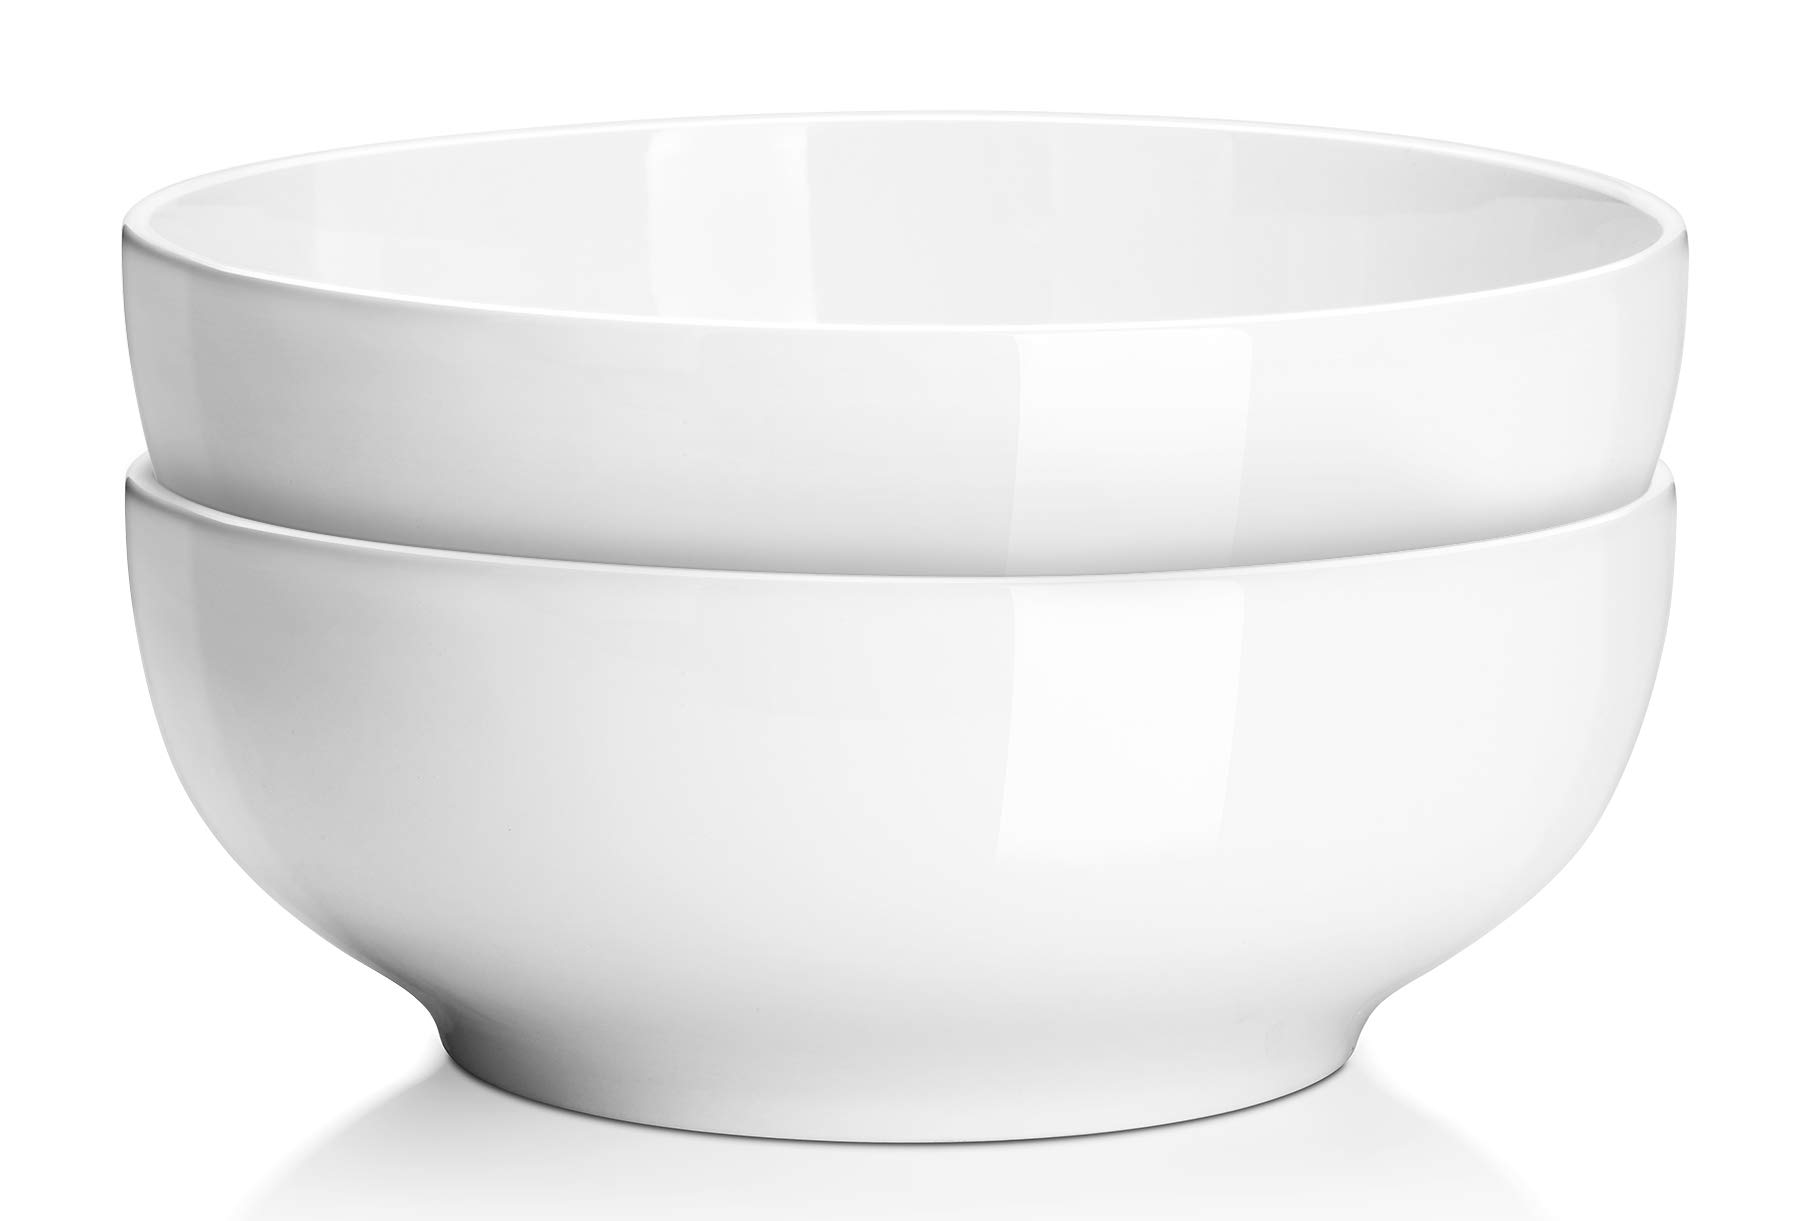 DOWAN Serving Bowls, Large Salad Bowls, 9.5